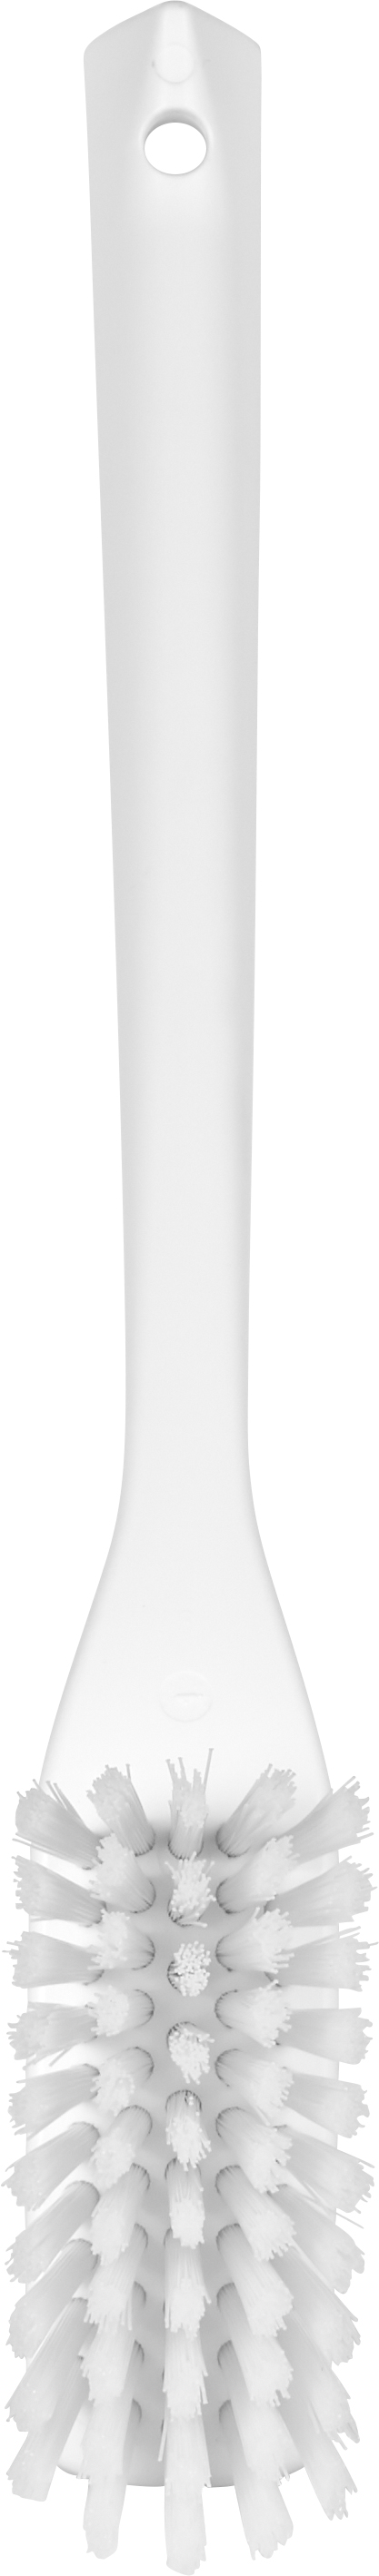 Vikan Schmale Reinigungsbürste mit langem Stiel, 420 mm